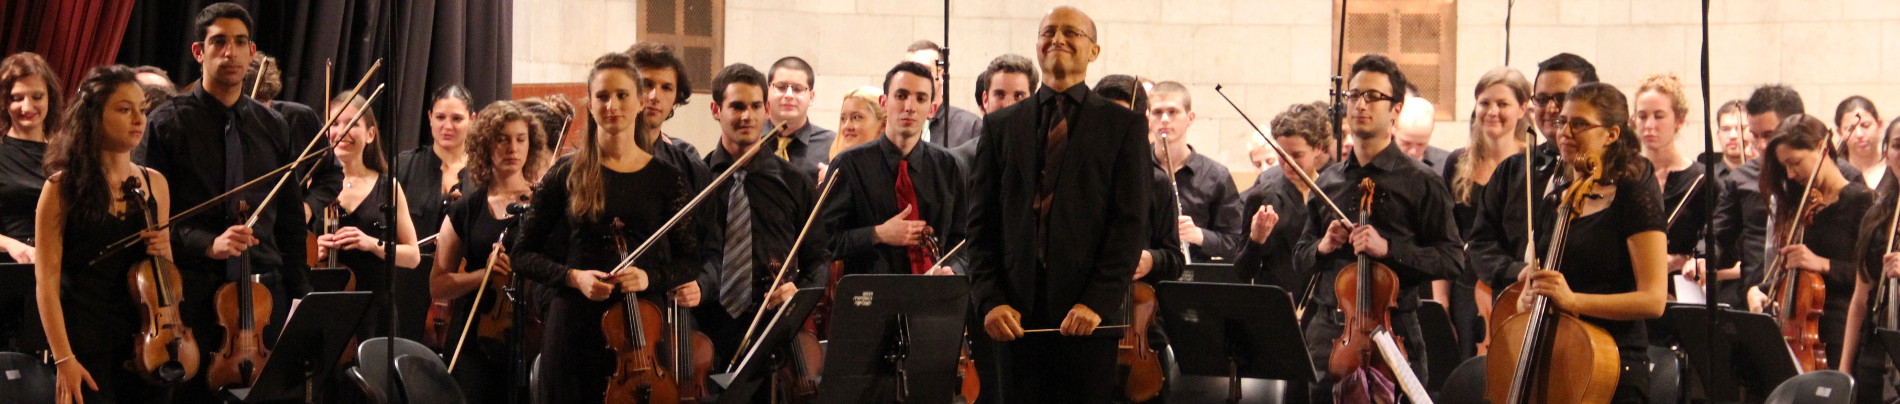 סימפוניית חורף - קונצרט לזכרו של הנשיא החמישי של מדינת ישראל יצחק נבון